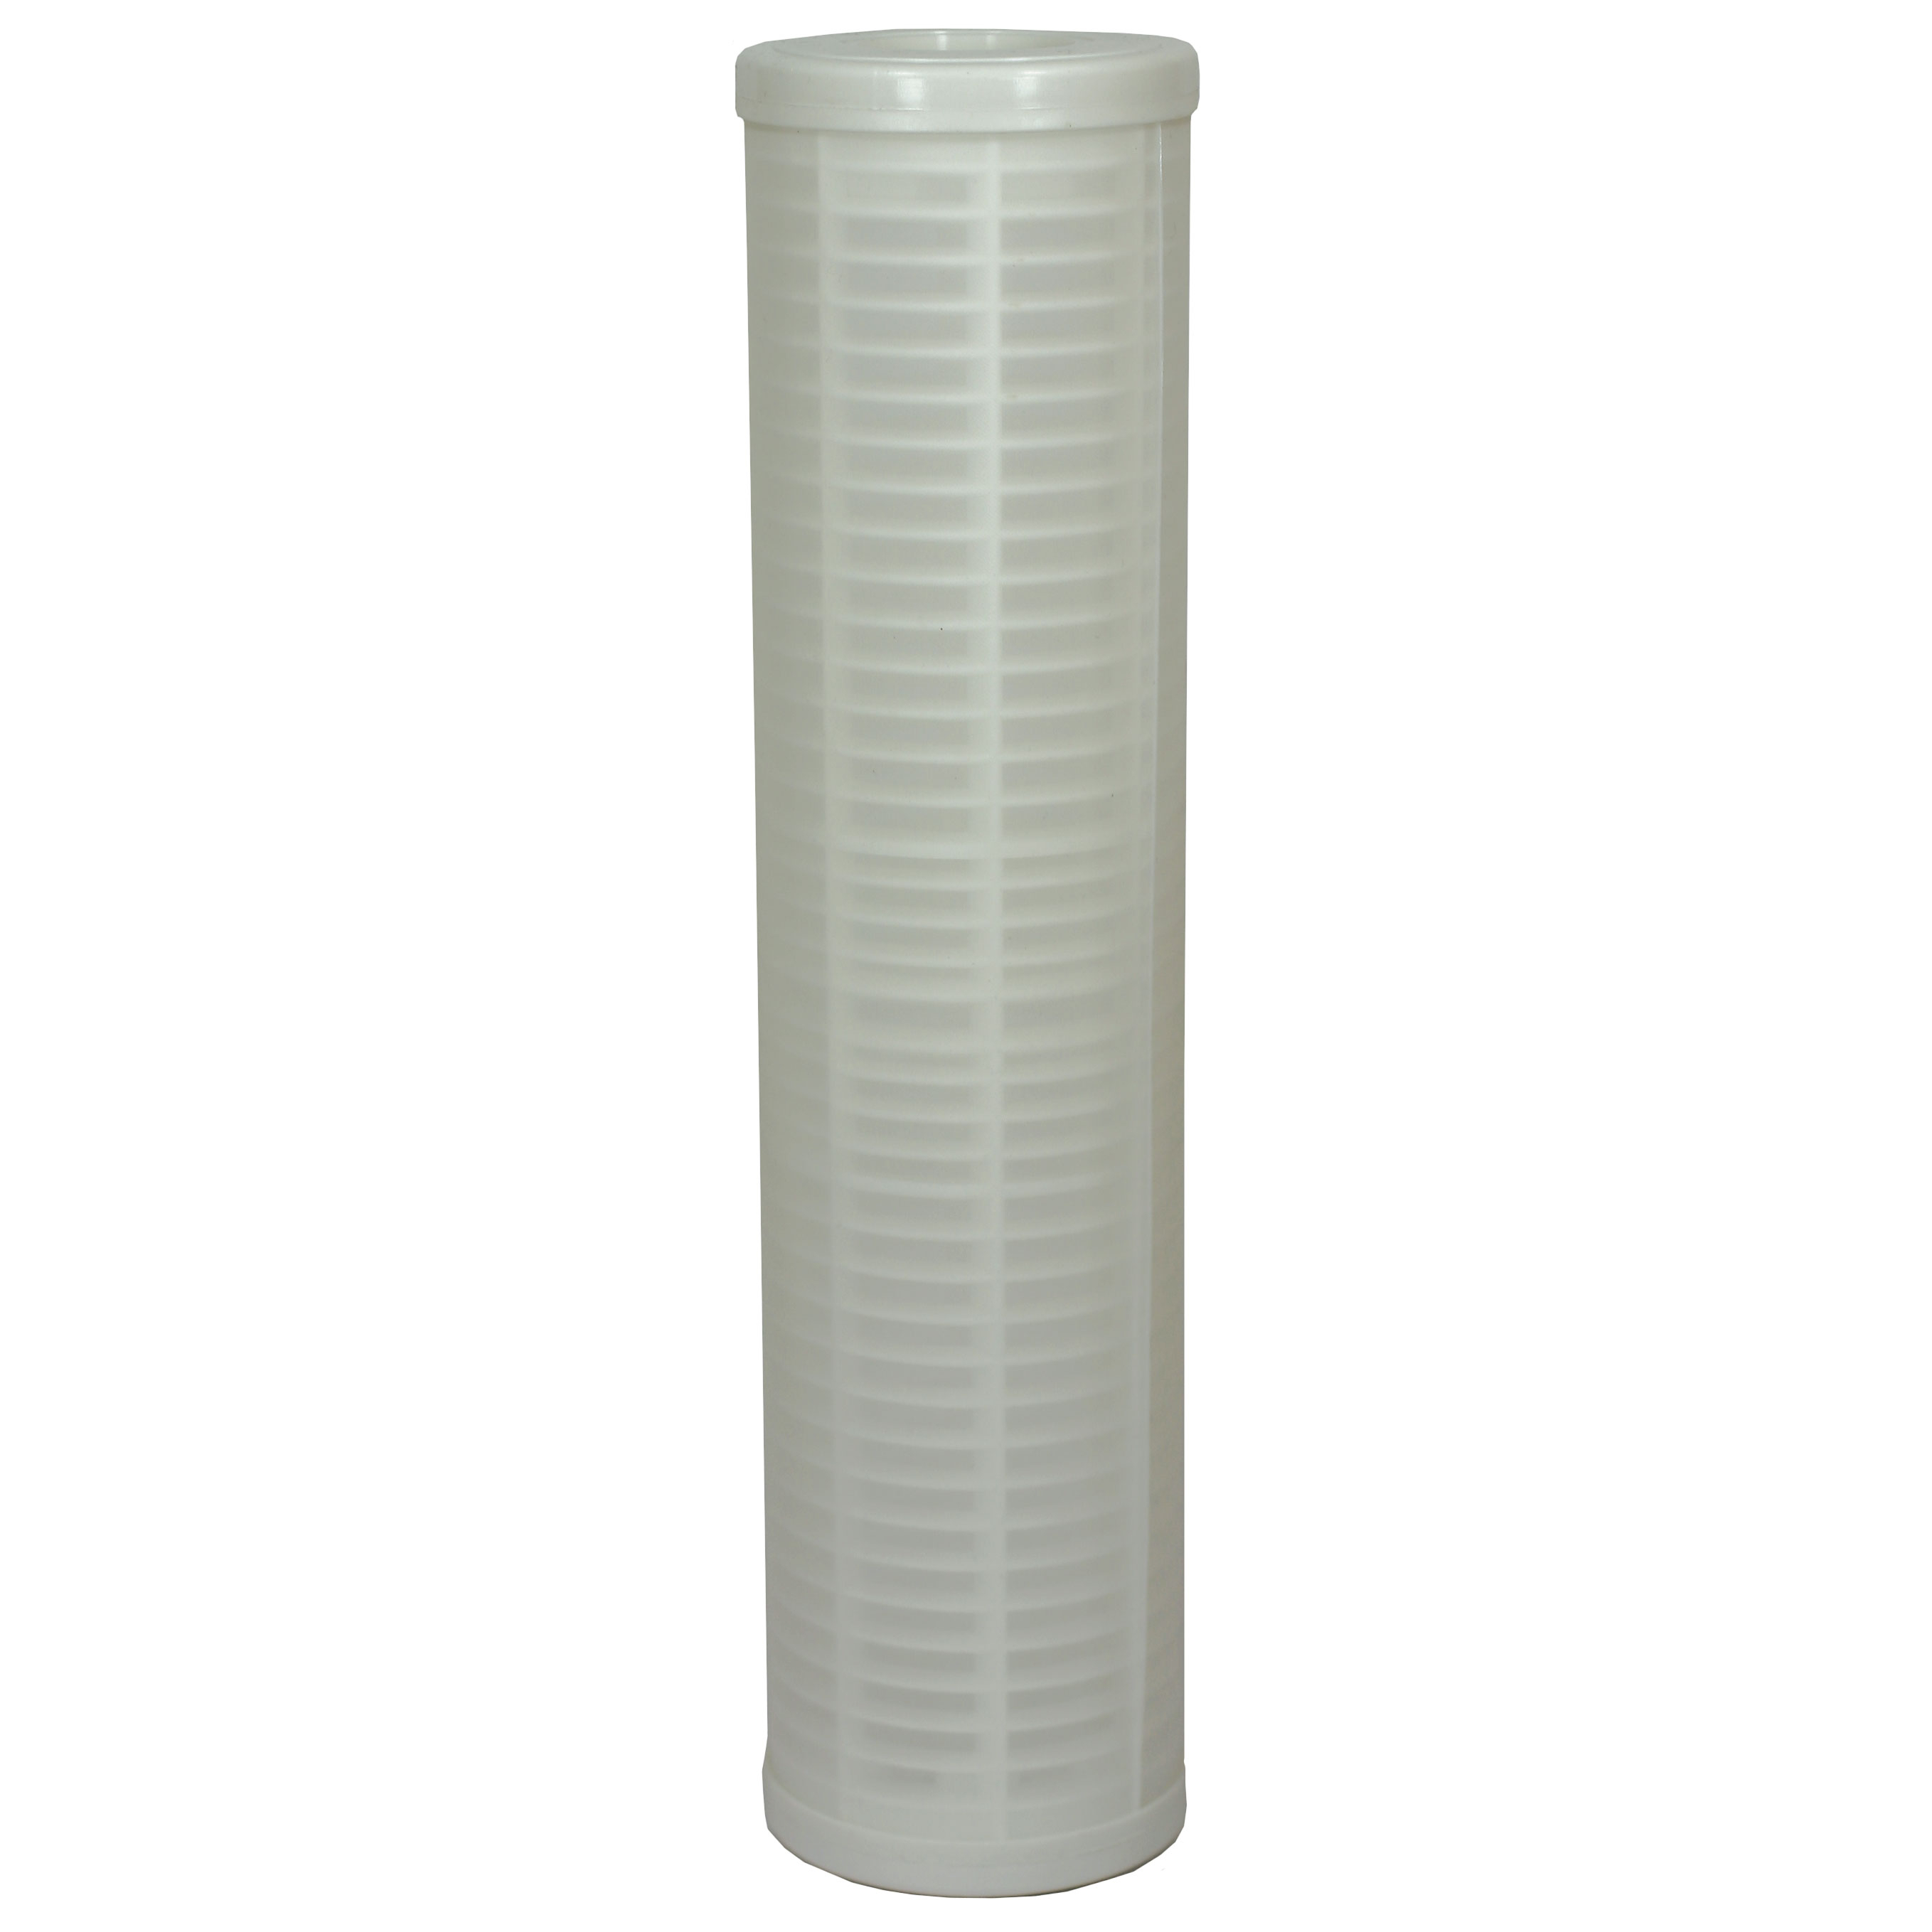 Cartouche filtrante en PVC lavable, filtration 150 Micron - Filtre 9.3/4 - Hauteur 250 mm